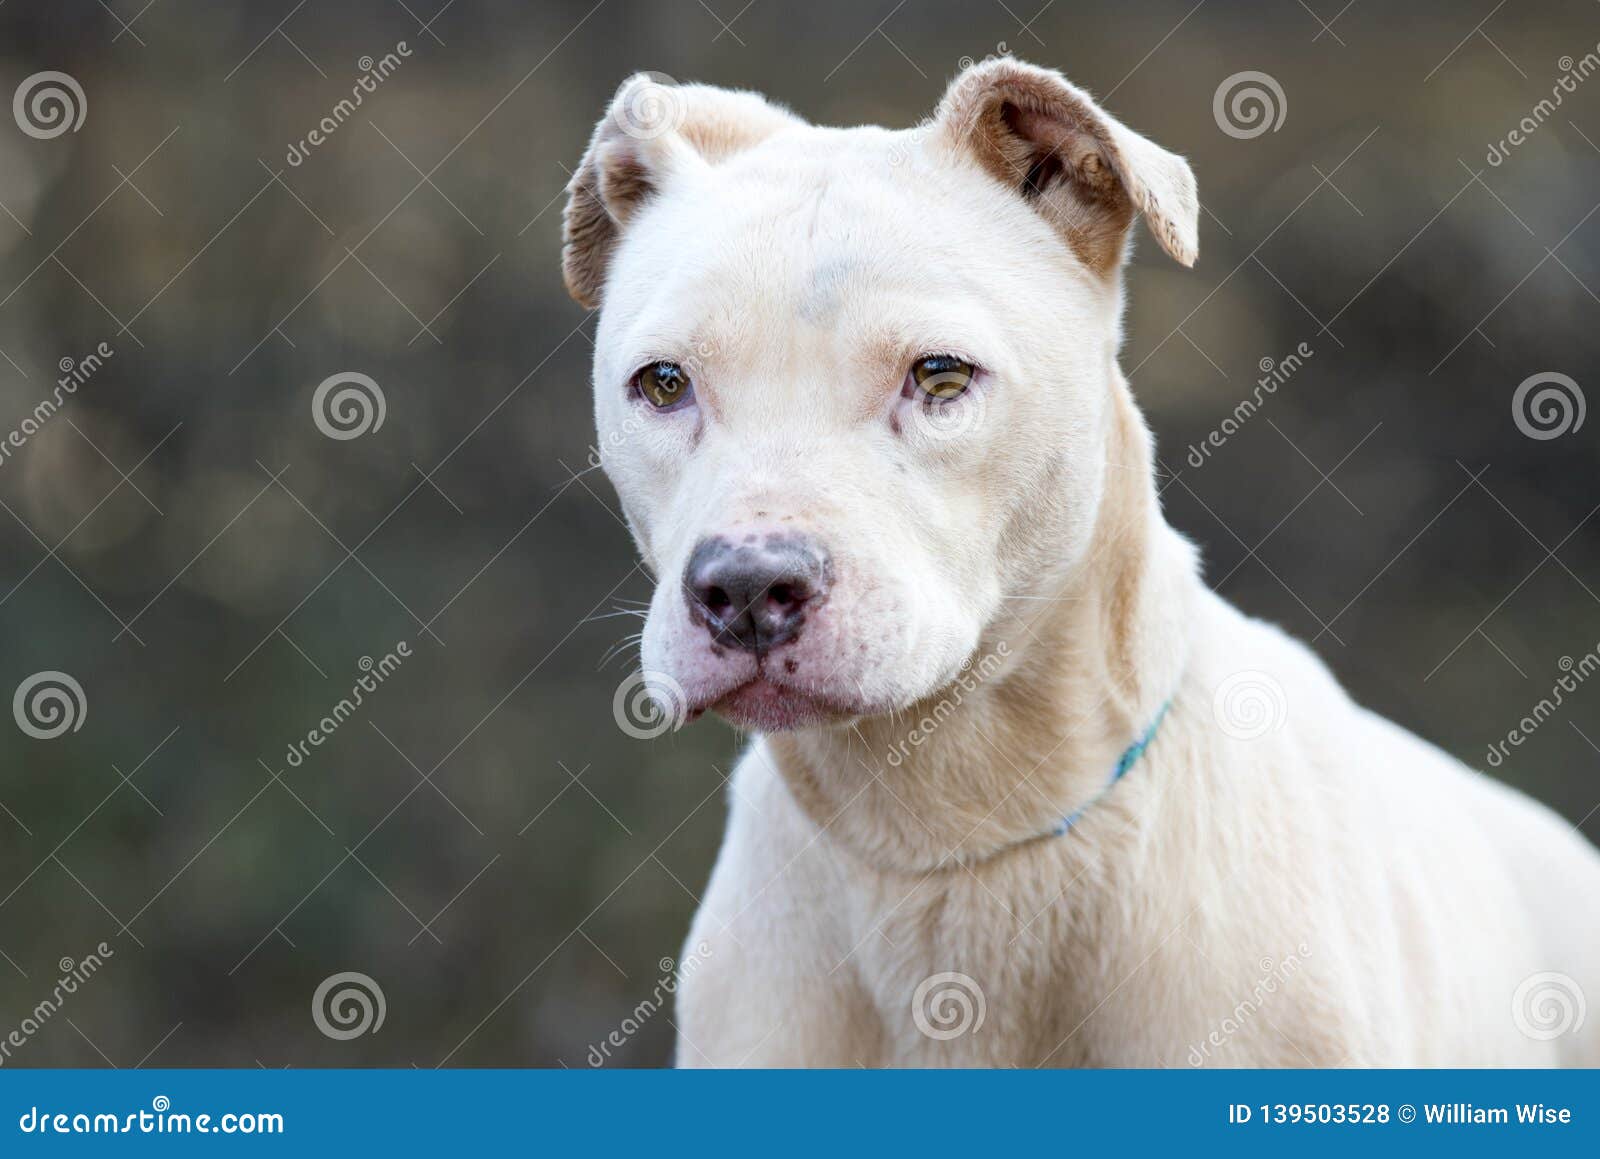 white pitbull female